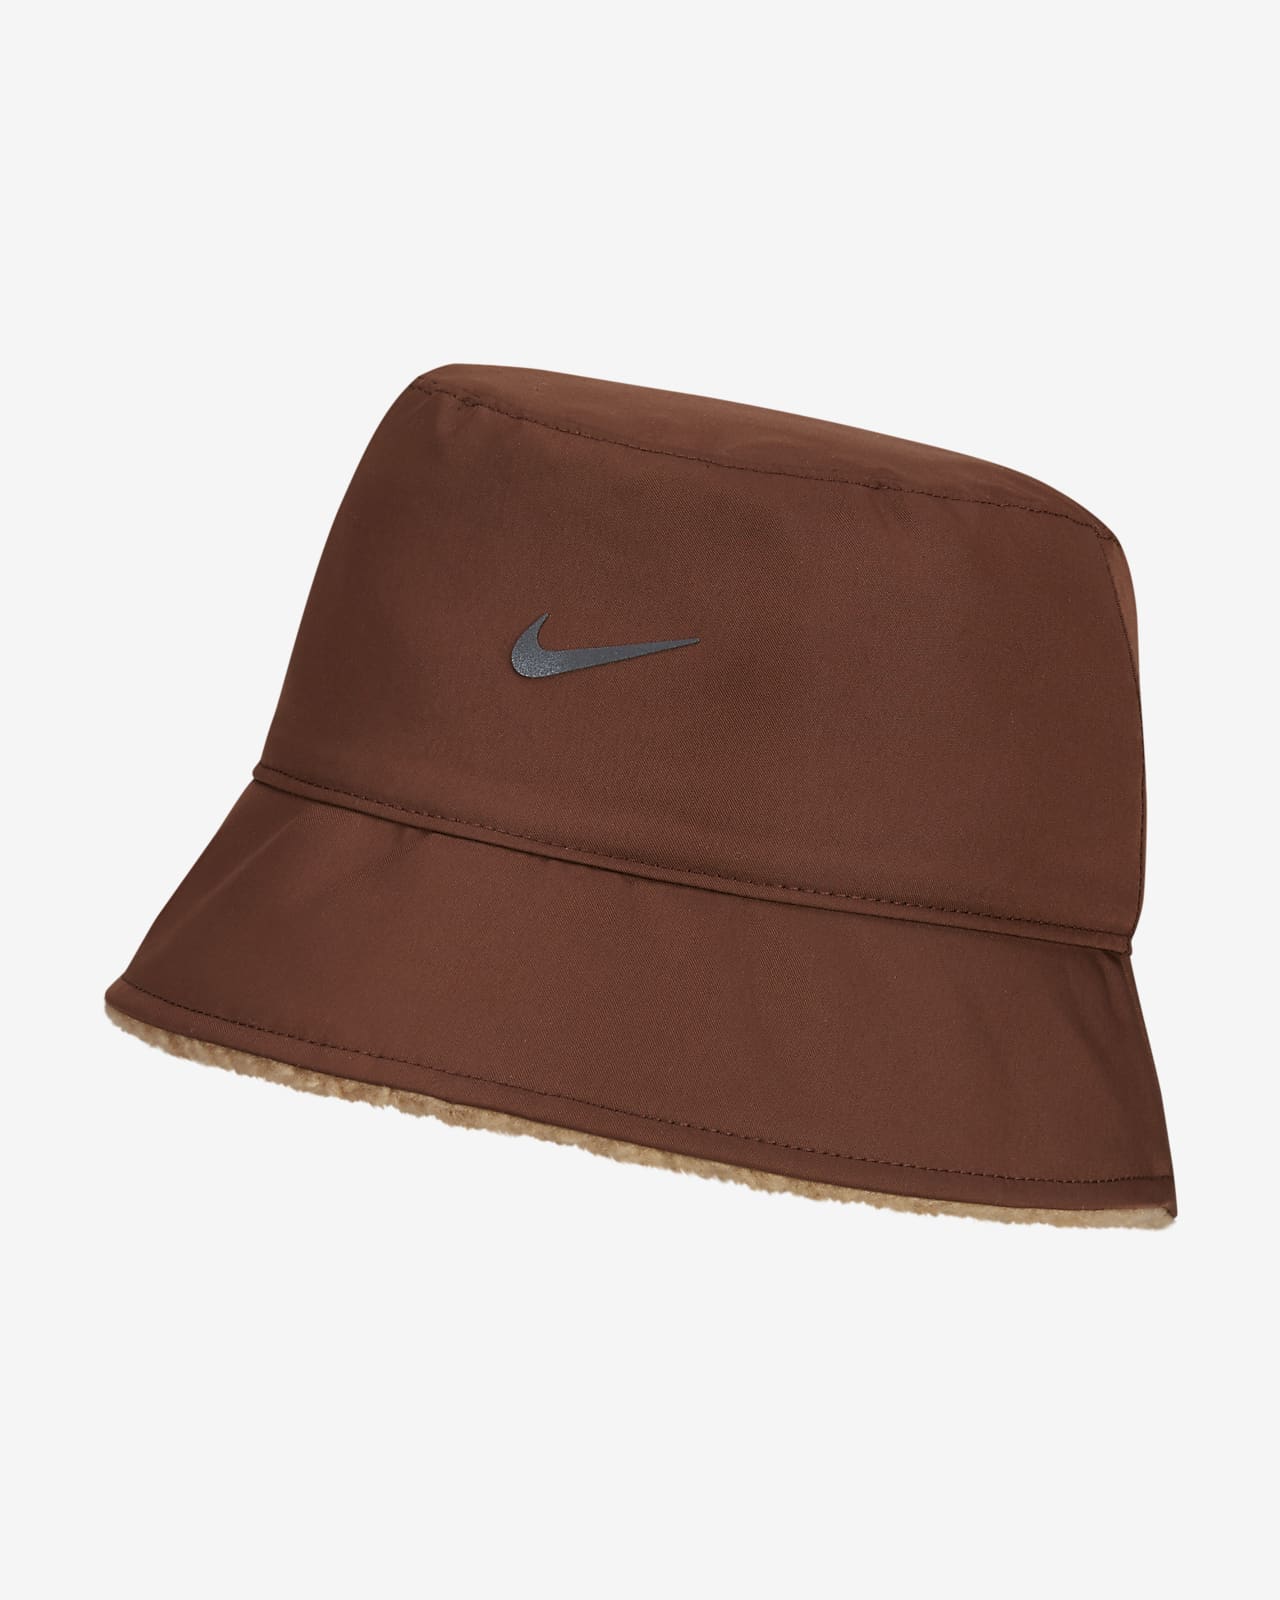 Nike Sportswear Bucket Hat. Reversible Fleece